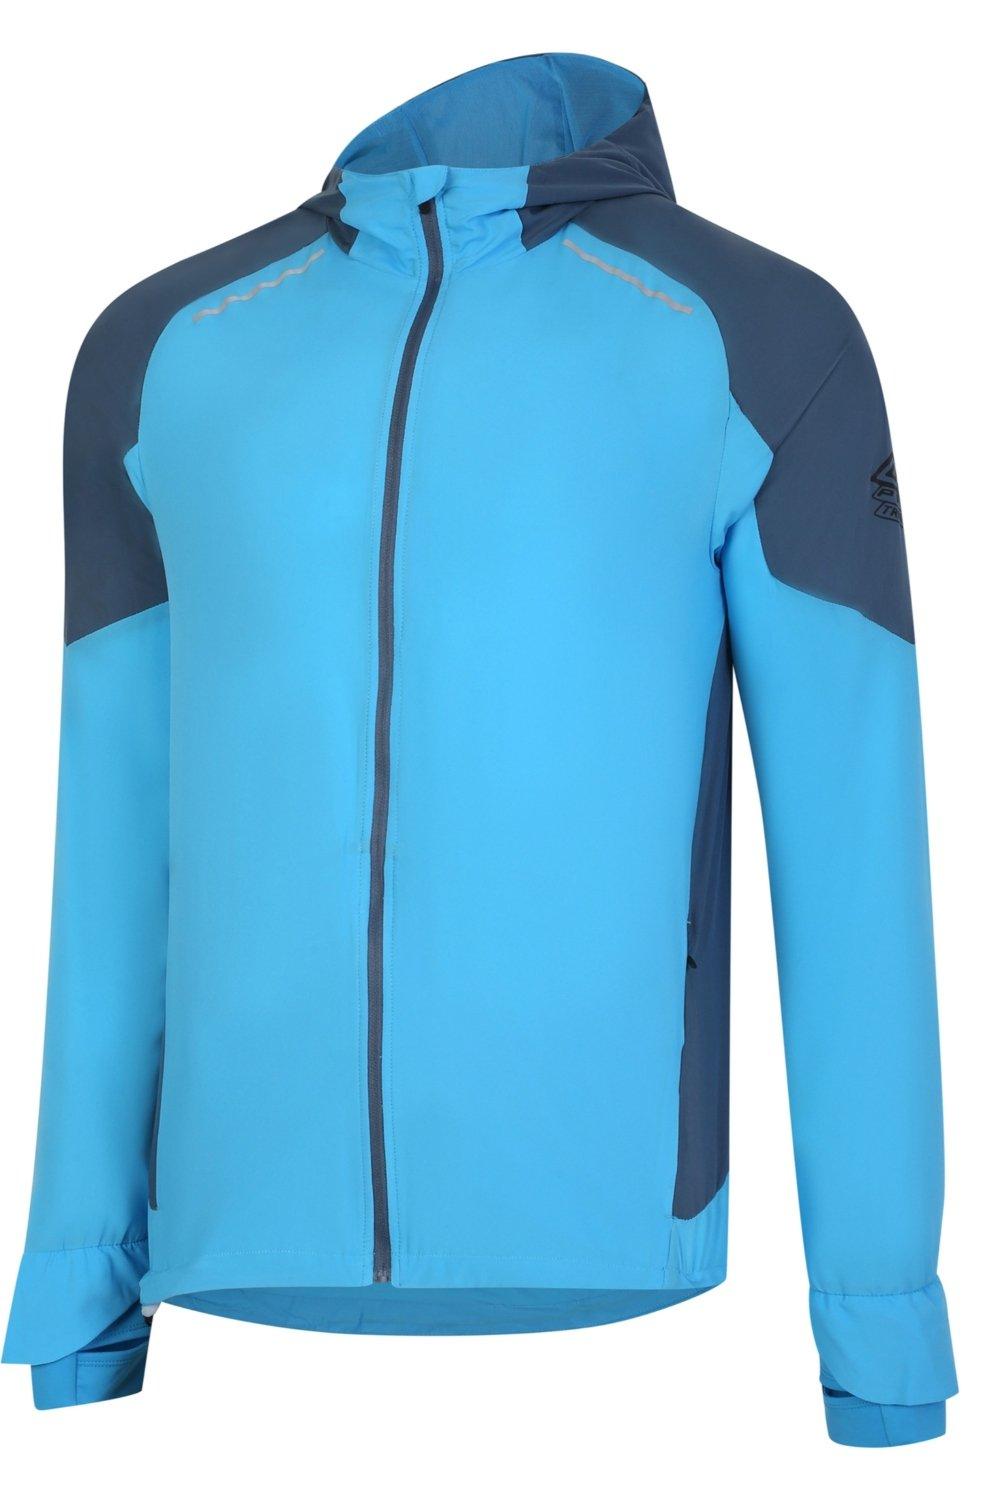 Легкая куртка Pro Training Elite Umbro, синий футболка umbro футболка тренировочная umbro pro training graphic 65845u kmu размер xl серый черный